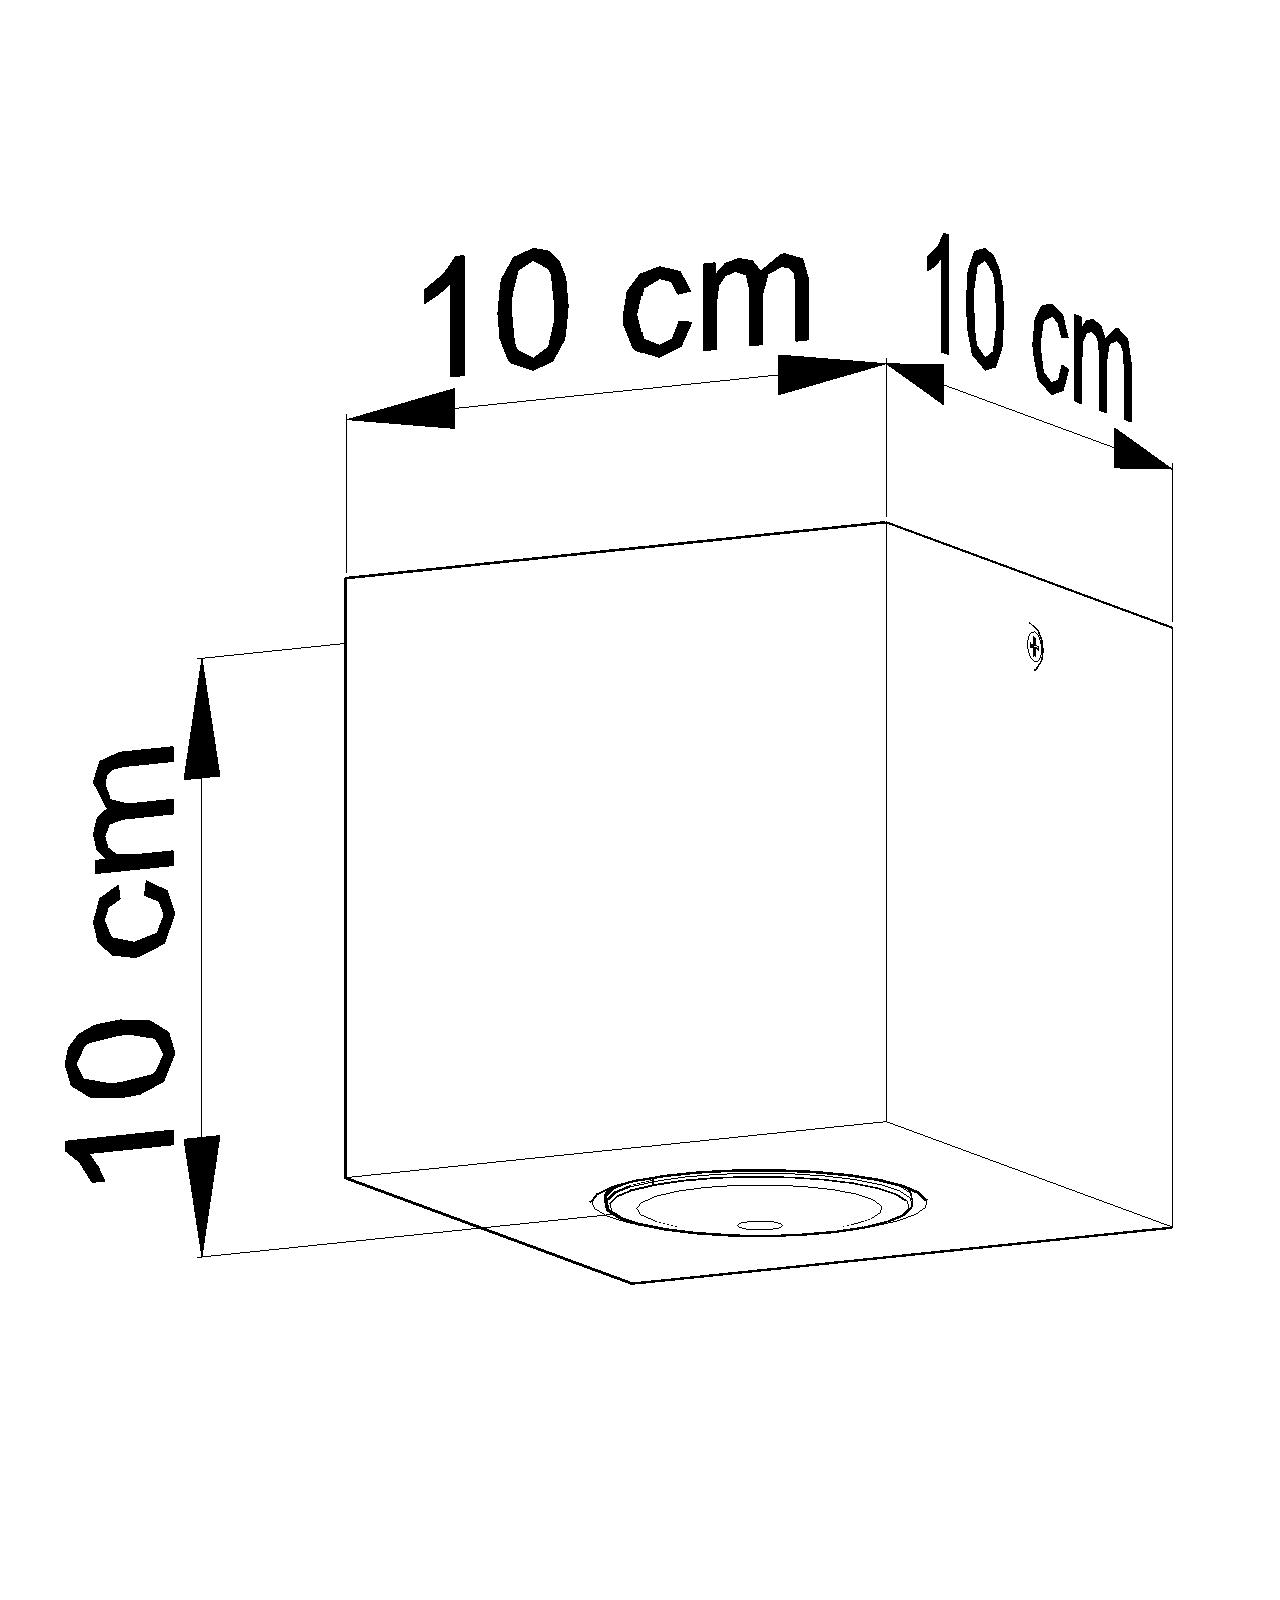 Quadratische Deckenleuchte Holz B:10cm klein GU10 Flur